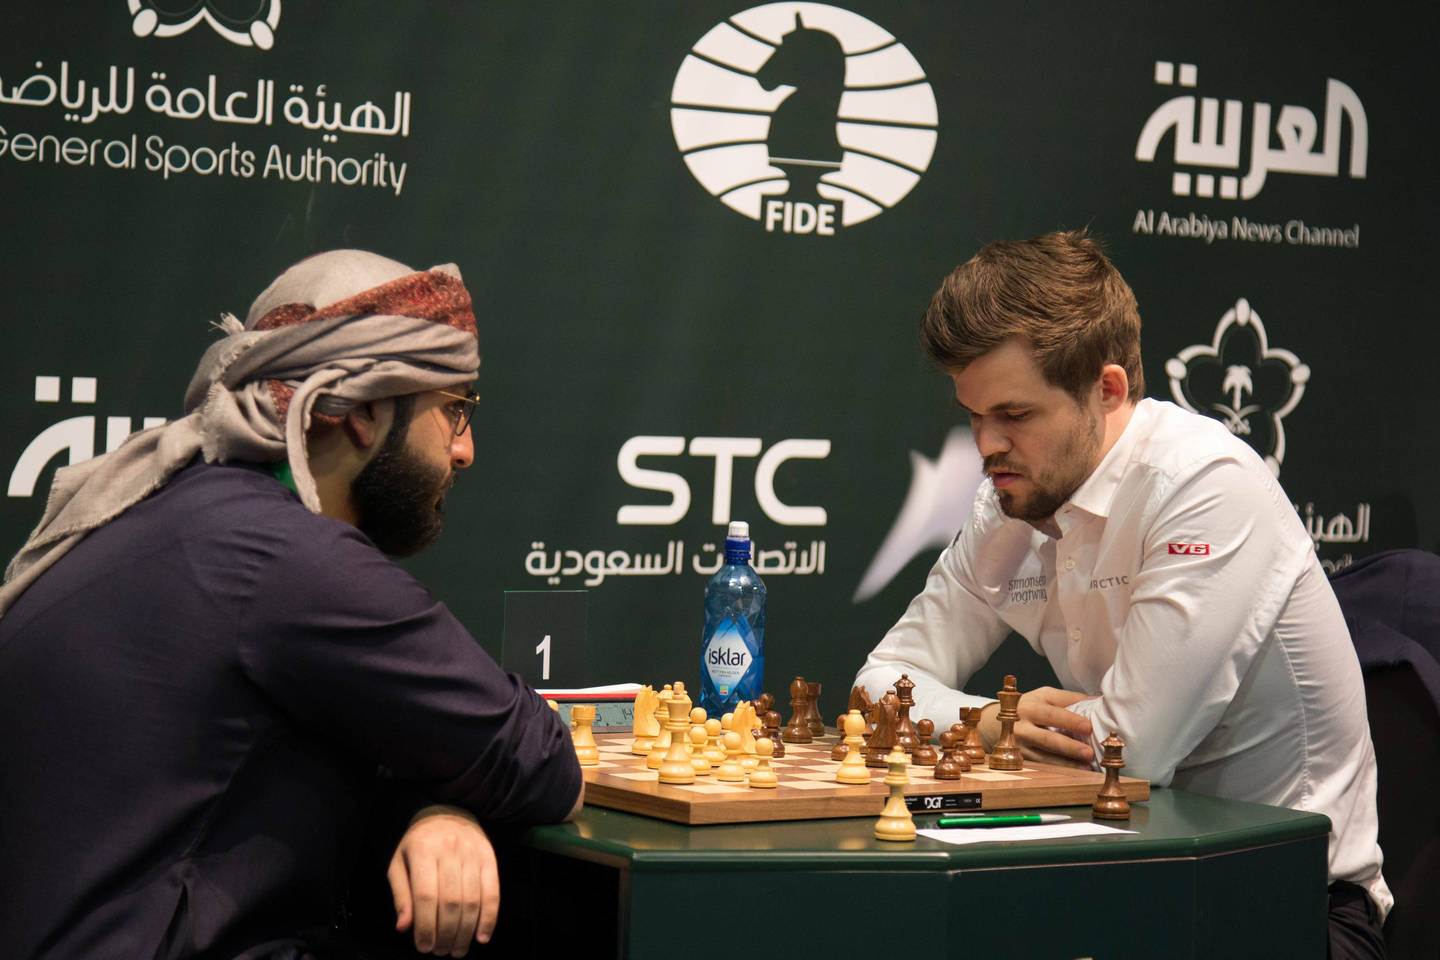  Saudo Arabijoje vyko pasaulio šachmatų čempionatas<br> AFP/Scanpix nuotr.